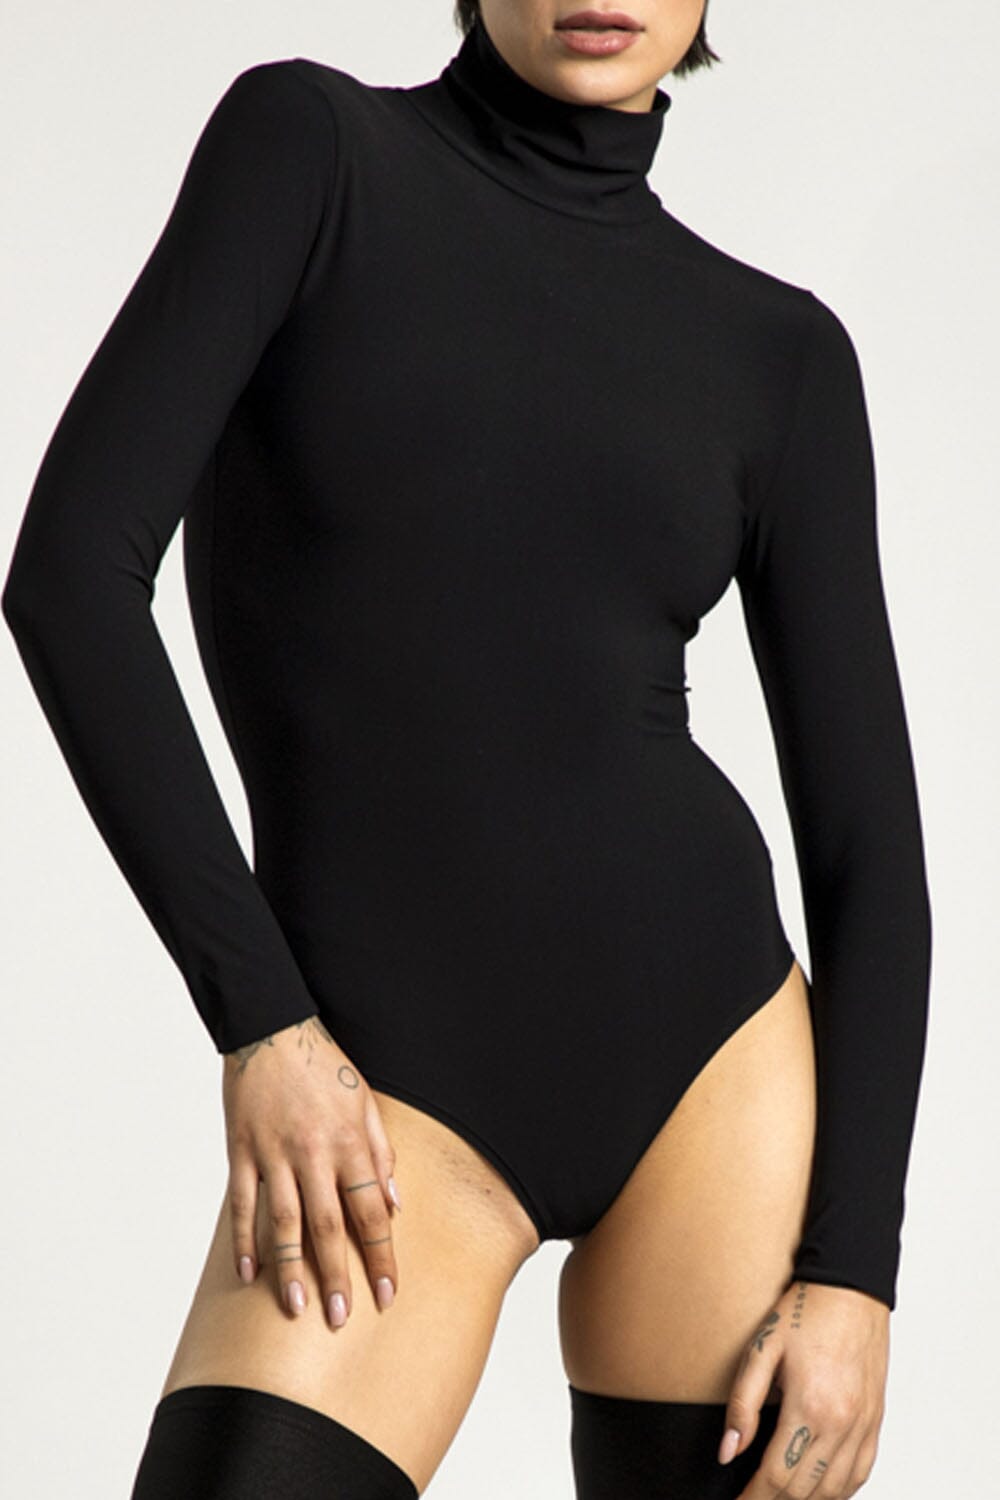  Tender Bodysuit Black Product SIA Glamoralle